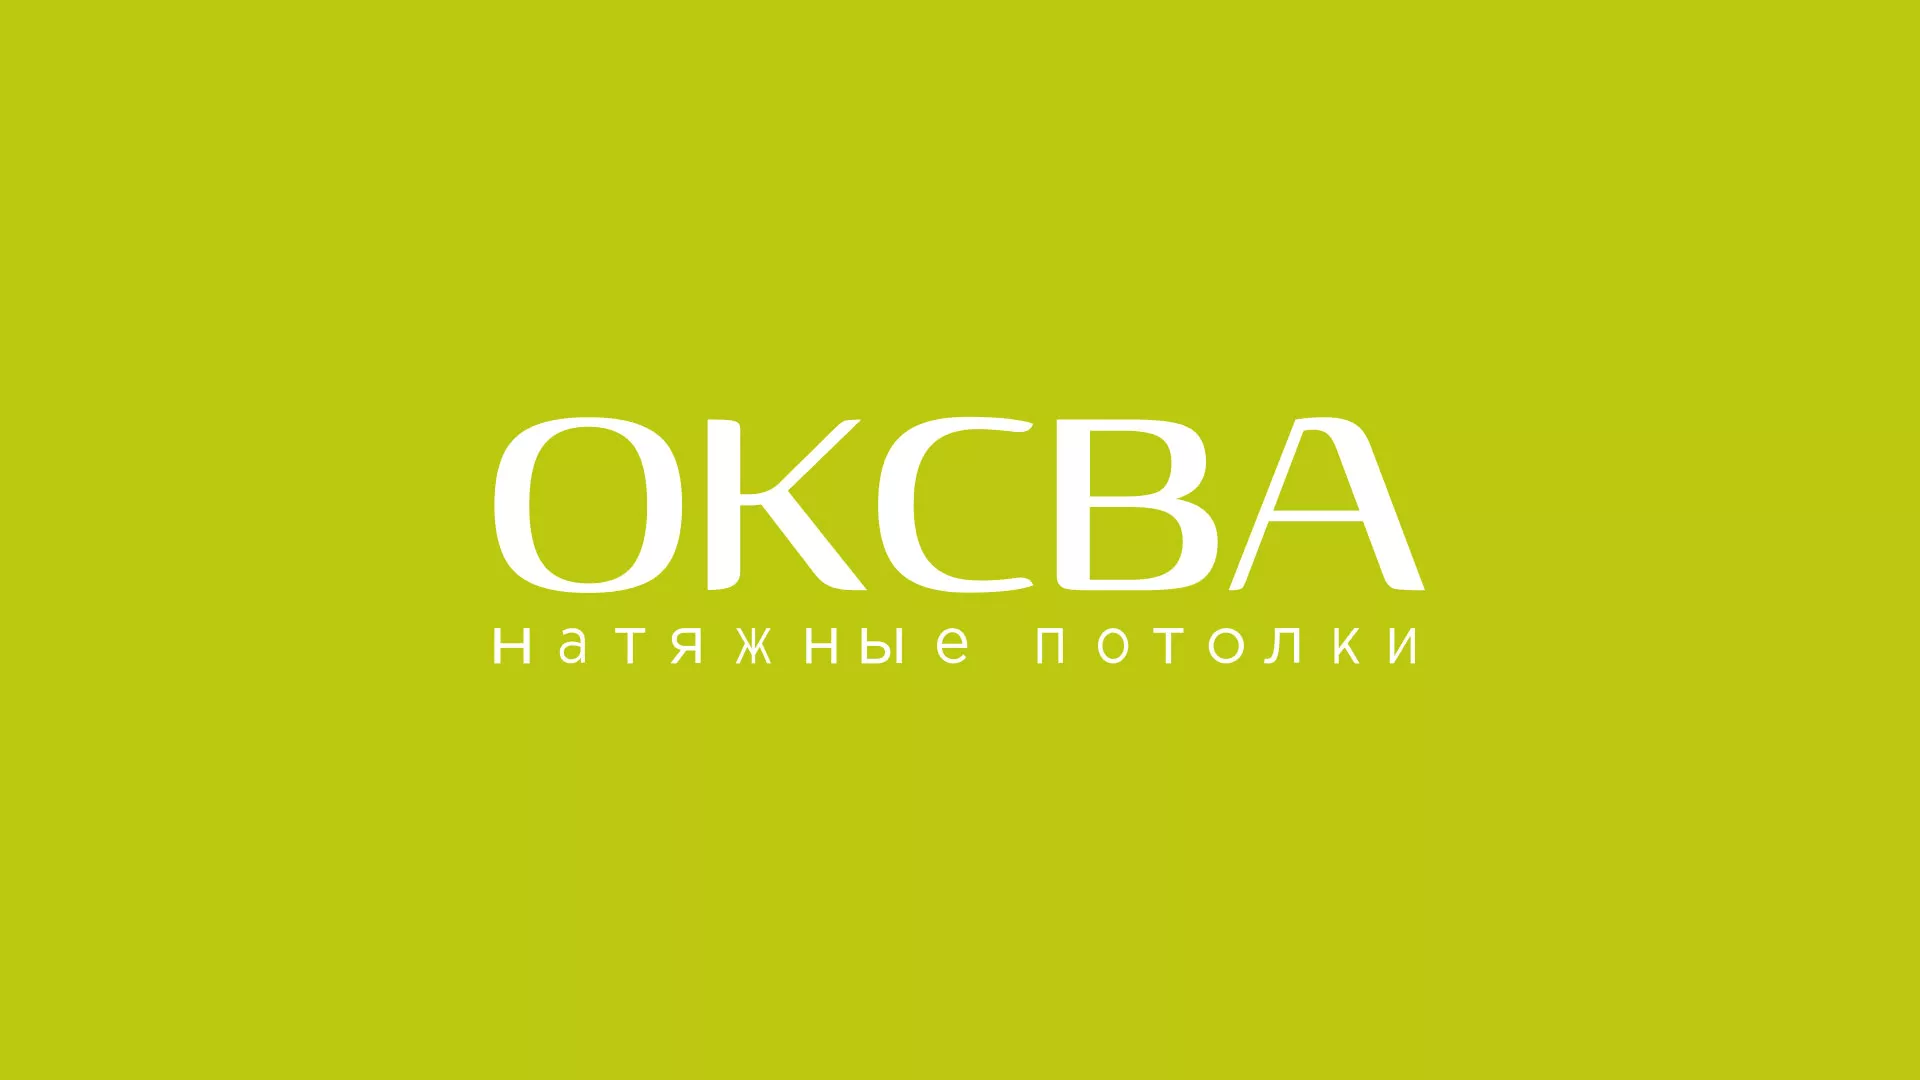 Создание сайта по продаже натяжных потолков для компании «ОКСВА» в Соколе